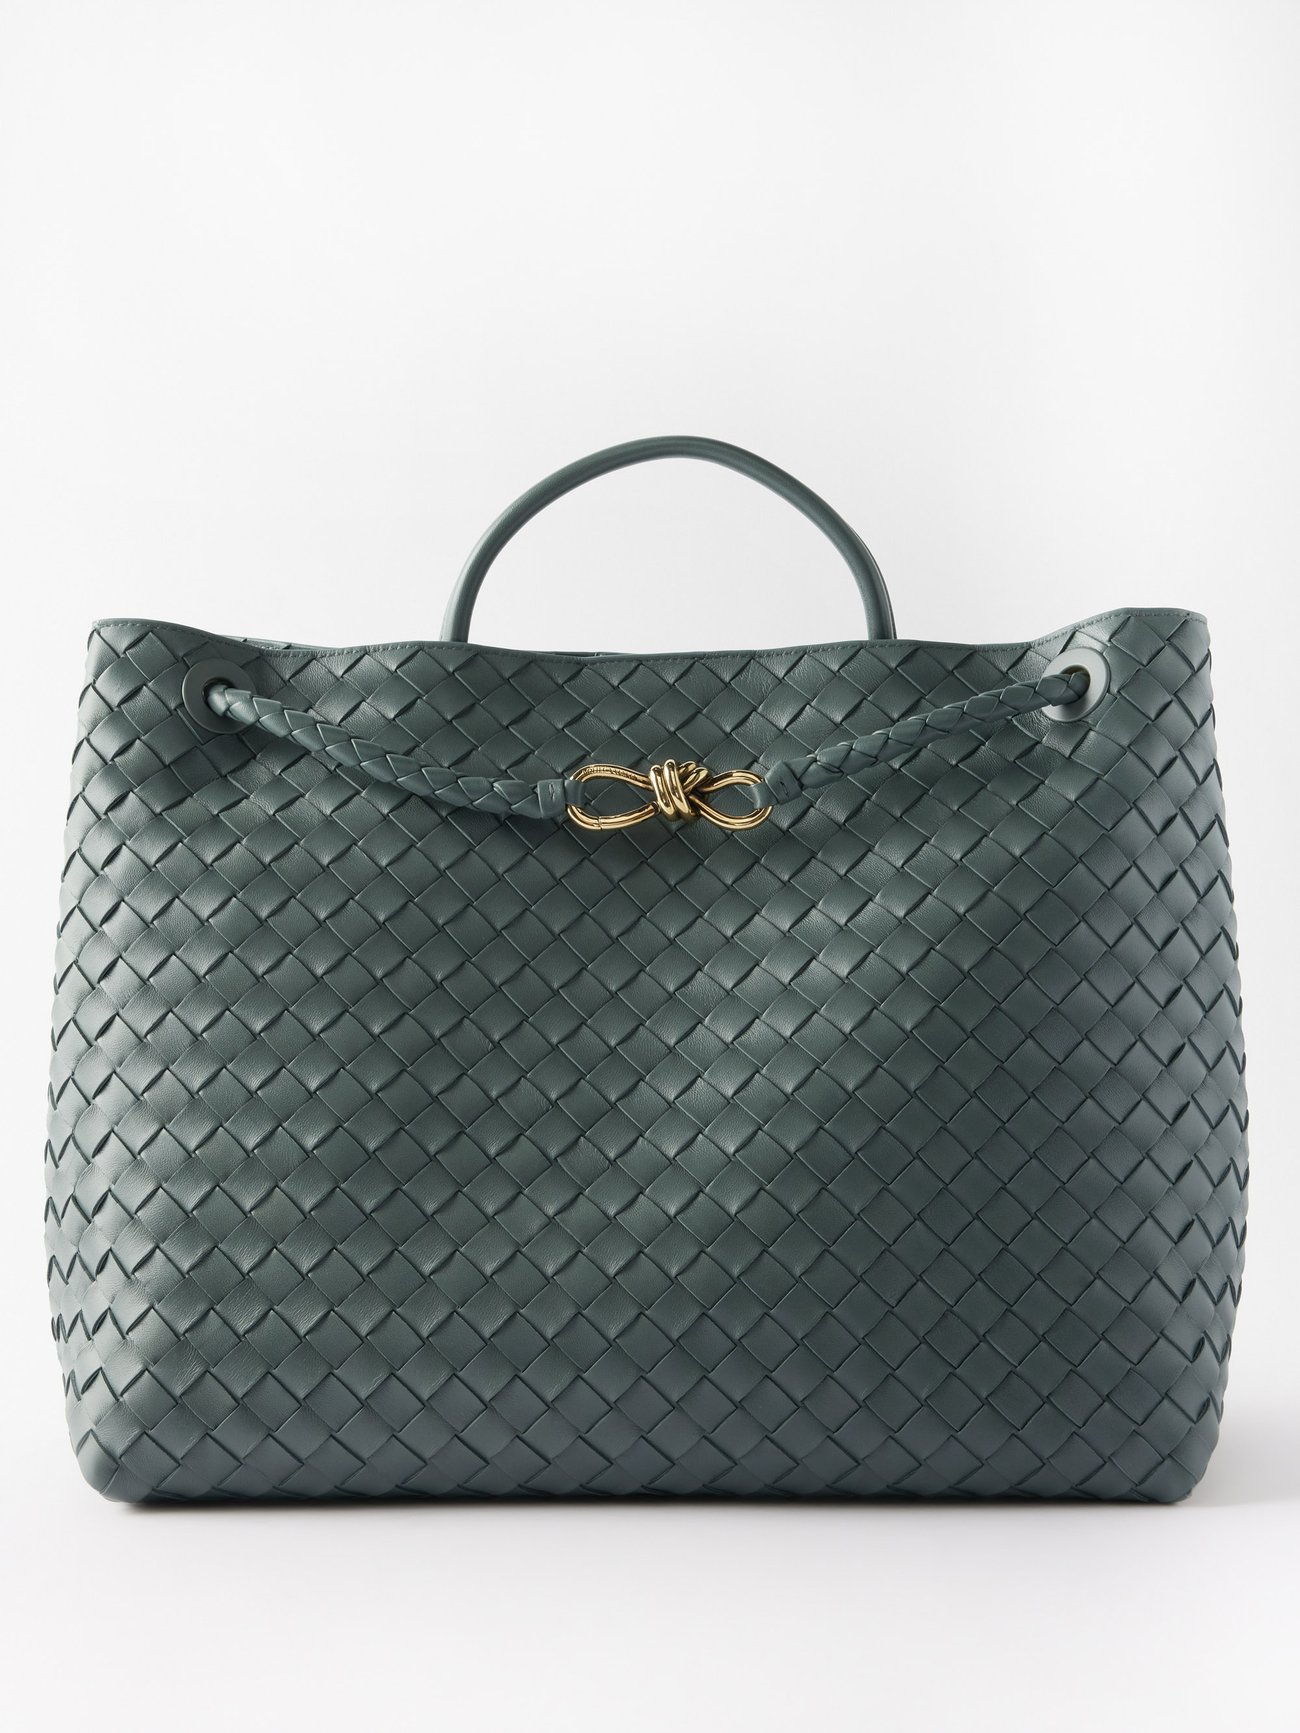 Bottega Veneta + Andiamo Large Intrecciato-Leather Handbag